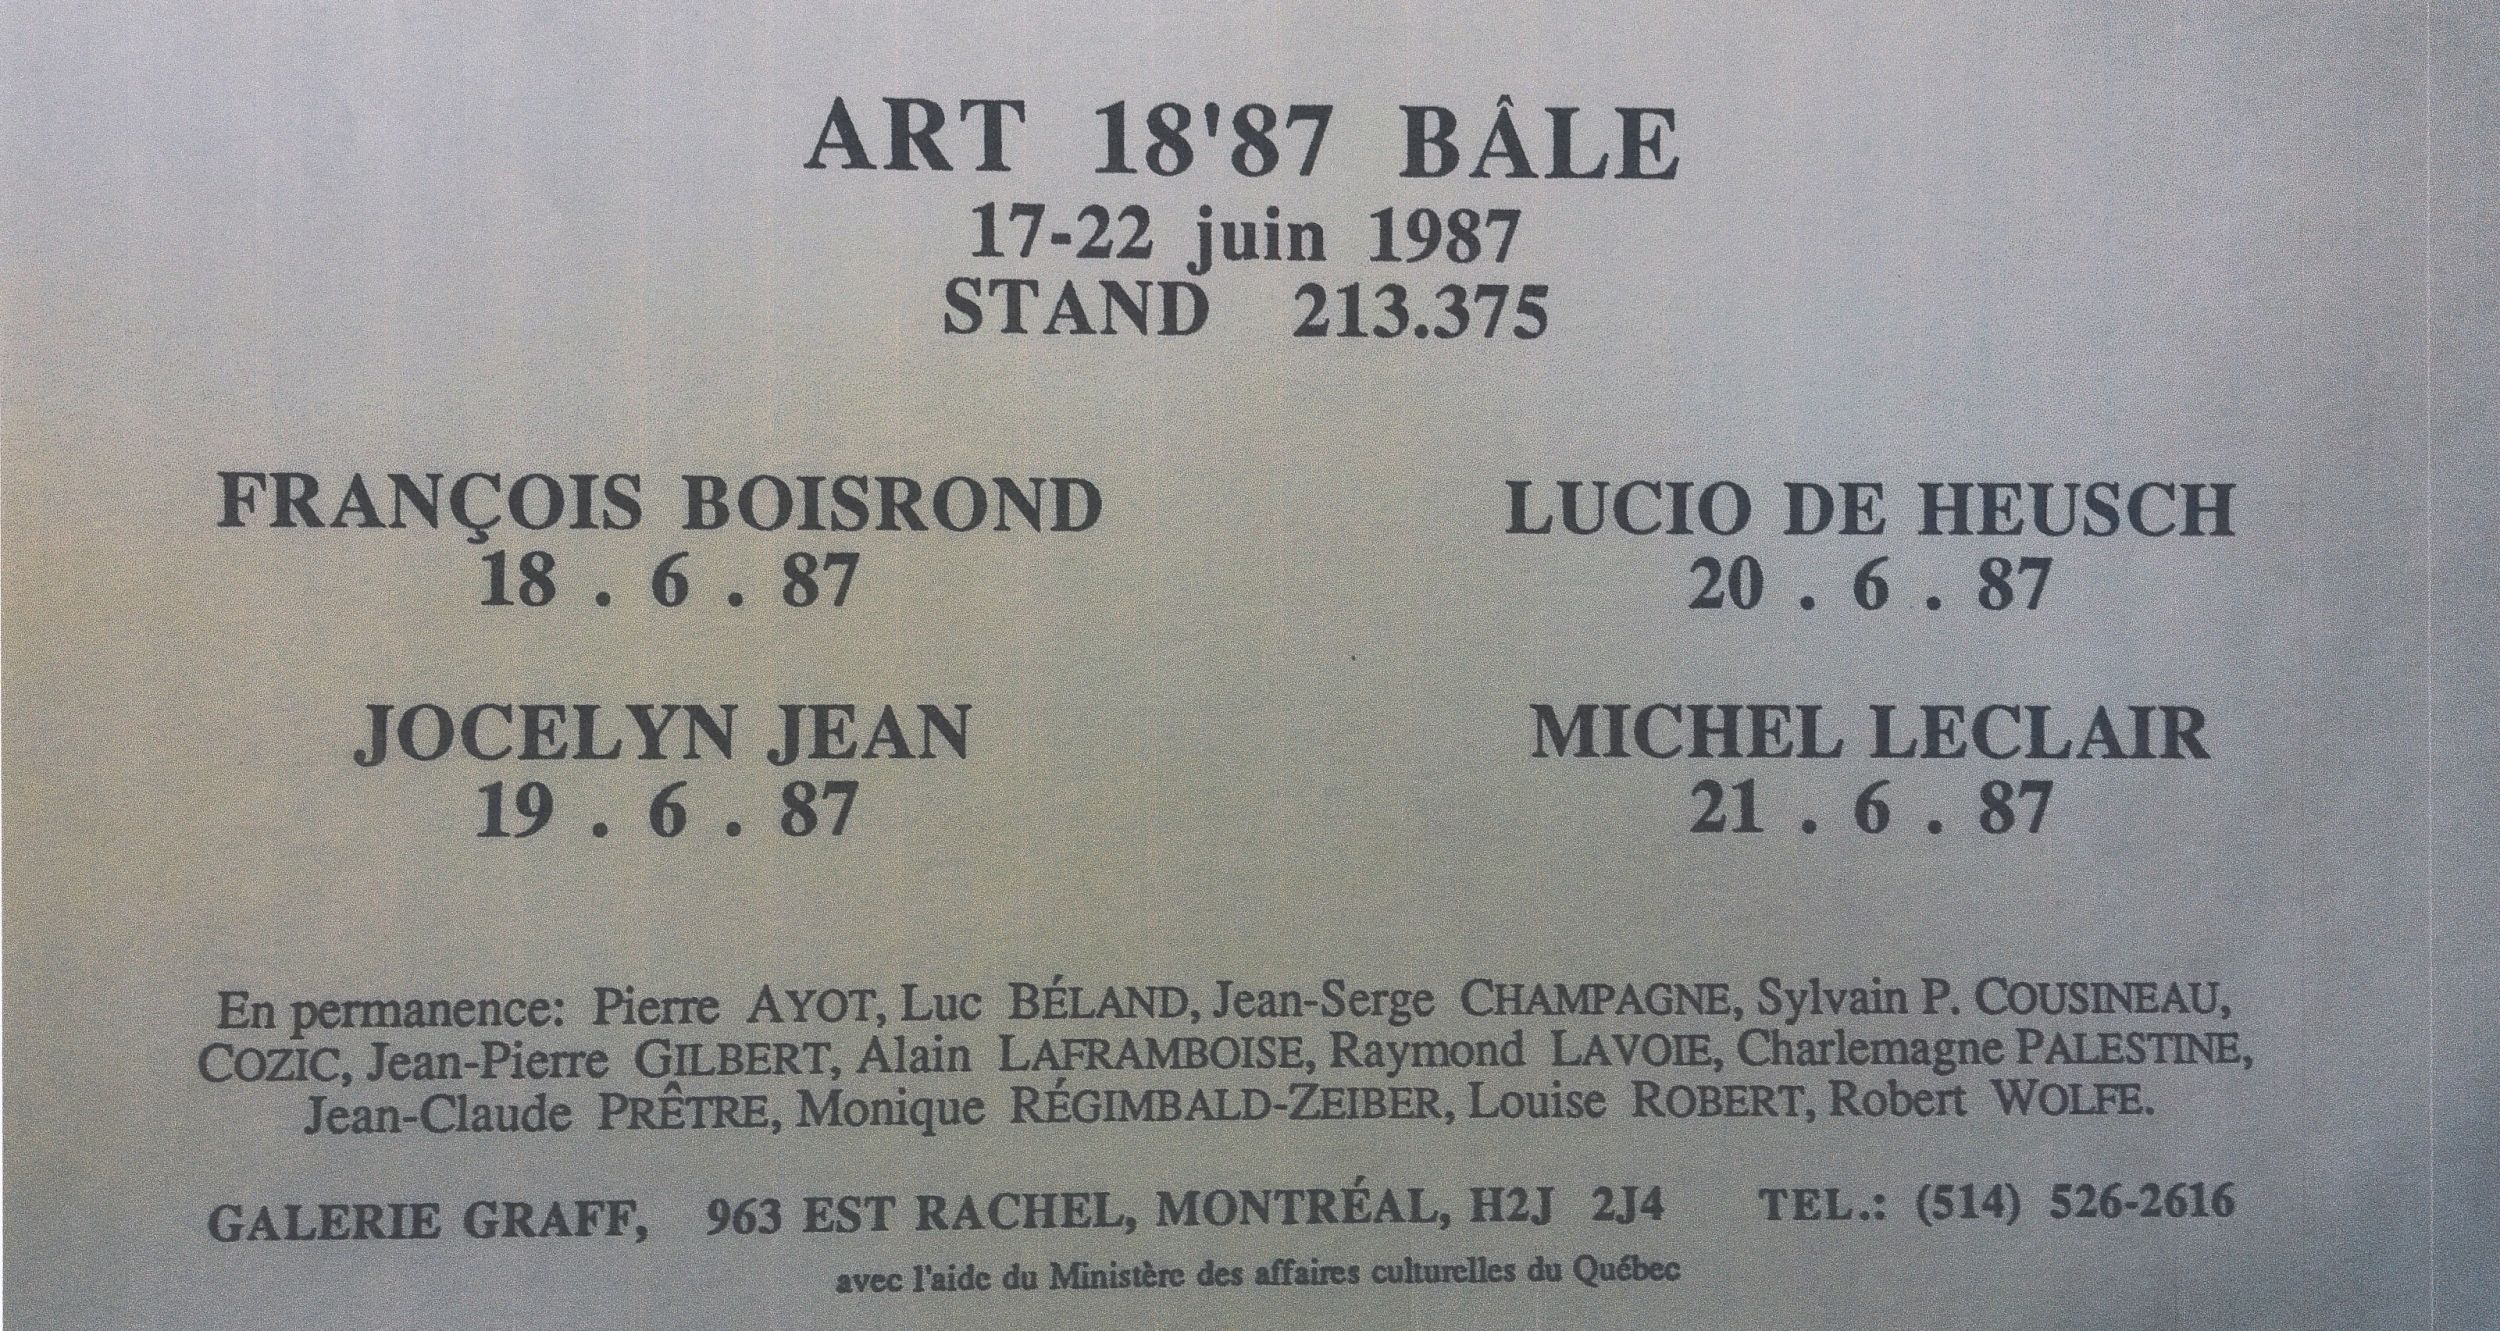 Carton d’invitation de l’exposition Art 18'87, Foire internationale de Bâle, Espace 213.375-Galerie Graff, Bâle, Suisse, 1987.